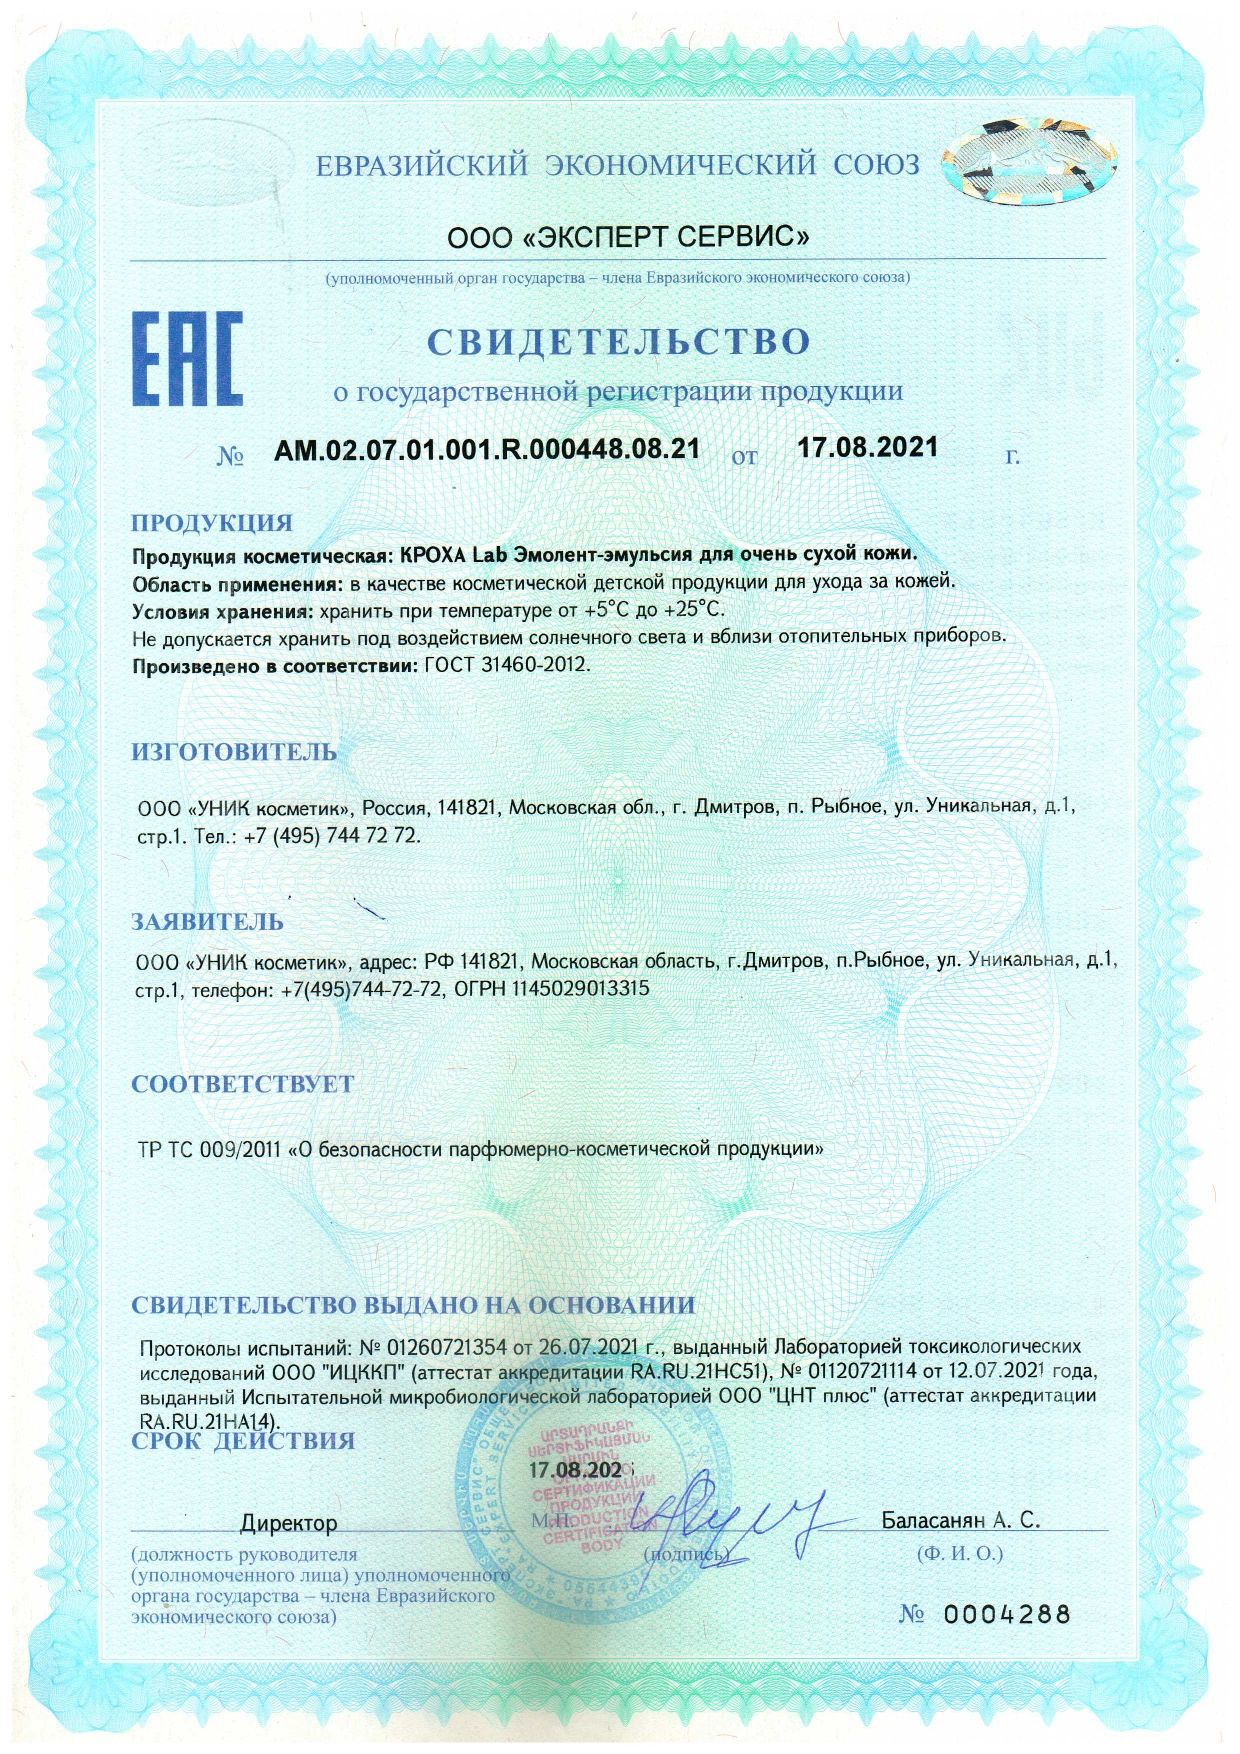 Кроха Lab Эмолент эмульсия сертификат